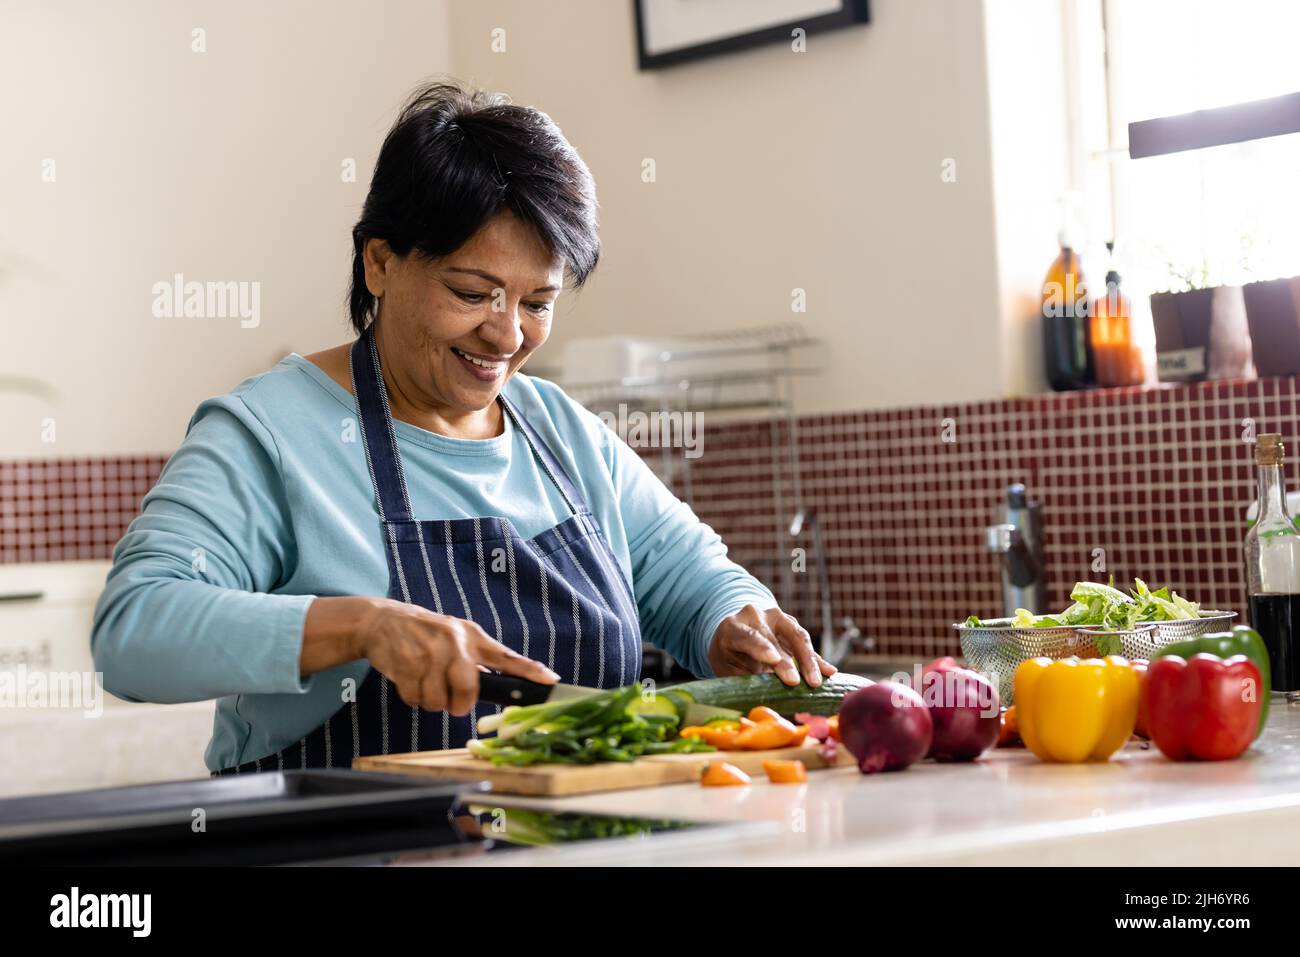 Sonriente mujer madura biracial con pelo corto usando delantal que corta verduras a bordo en la cocina Foto de stock